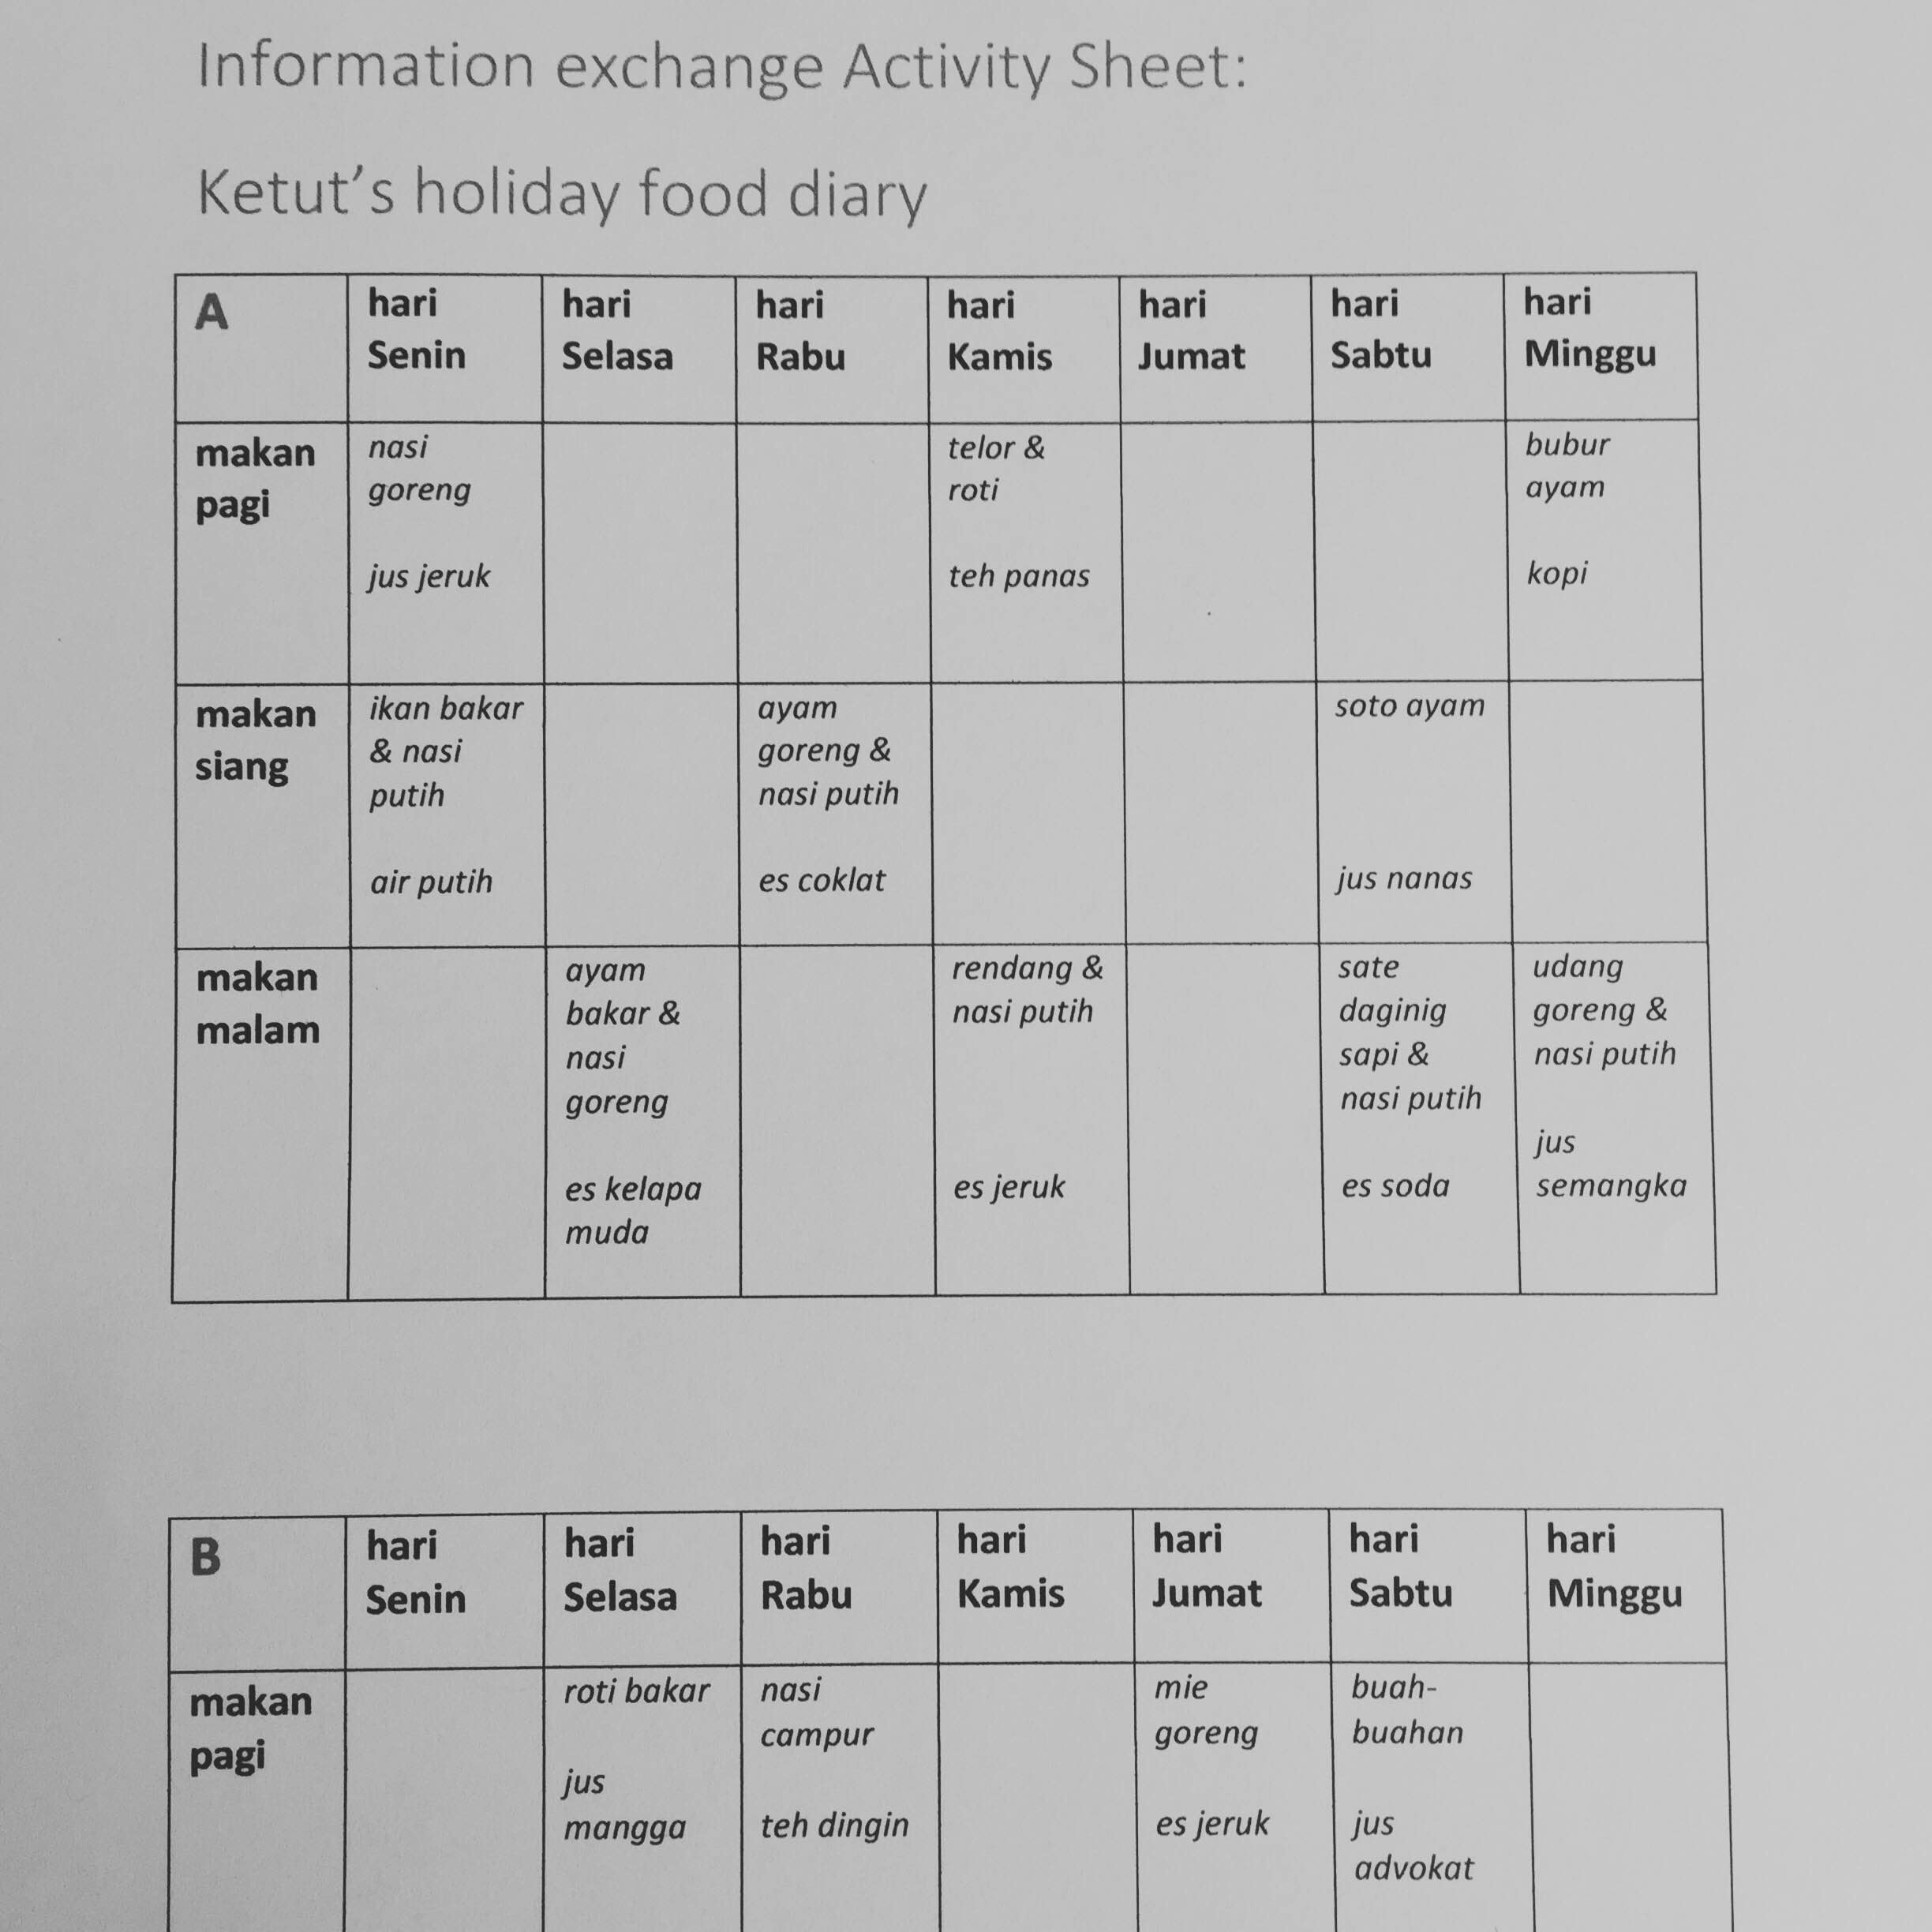 Info exchange activity sample pic